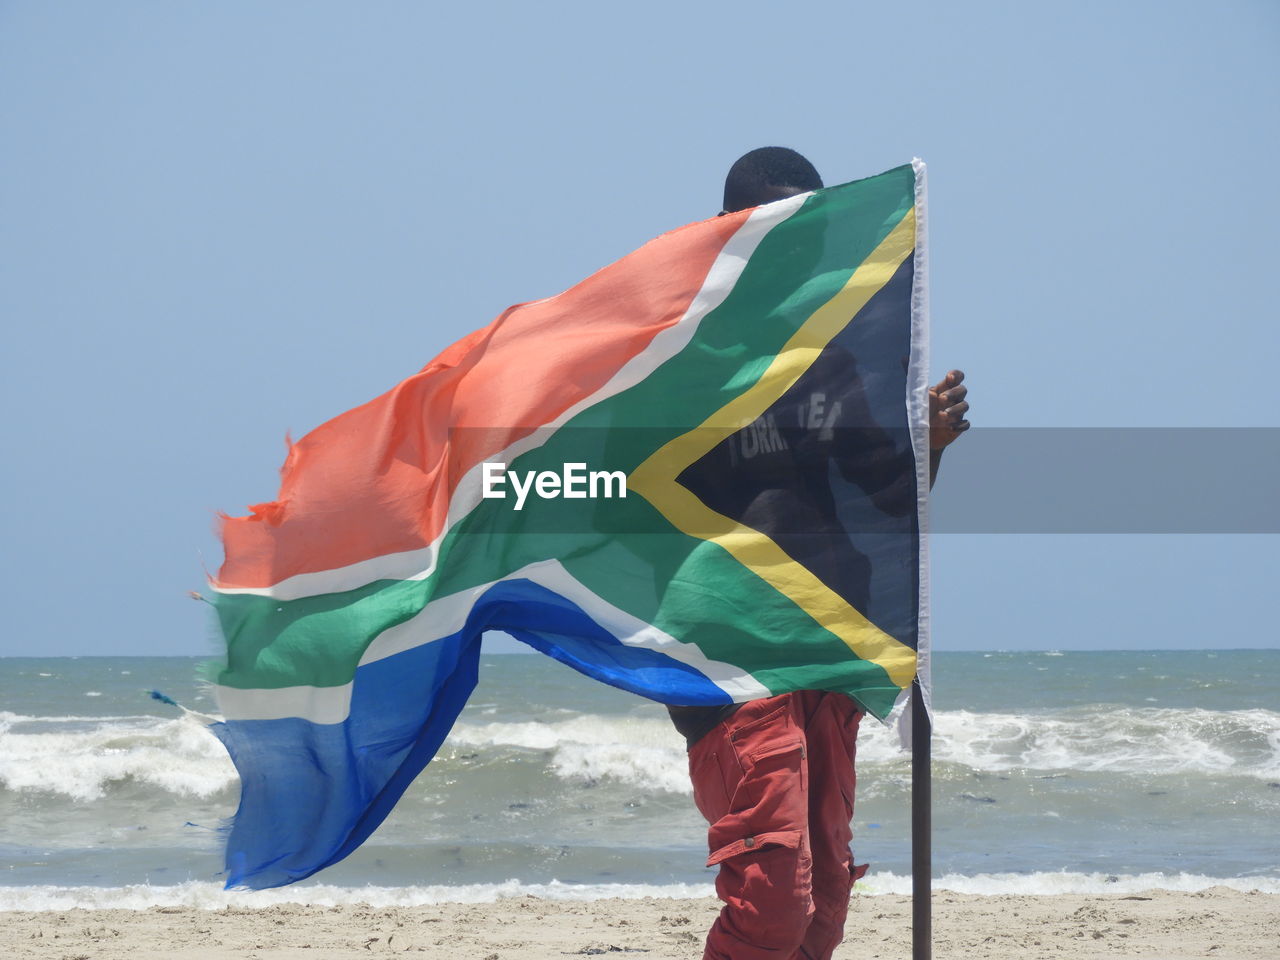 MAN FLAG ON BEACH